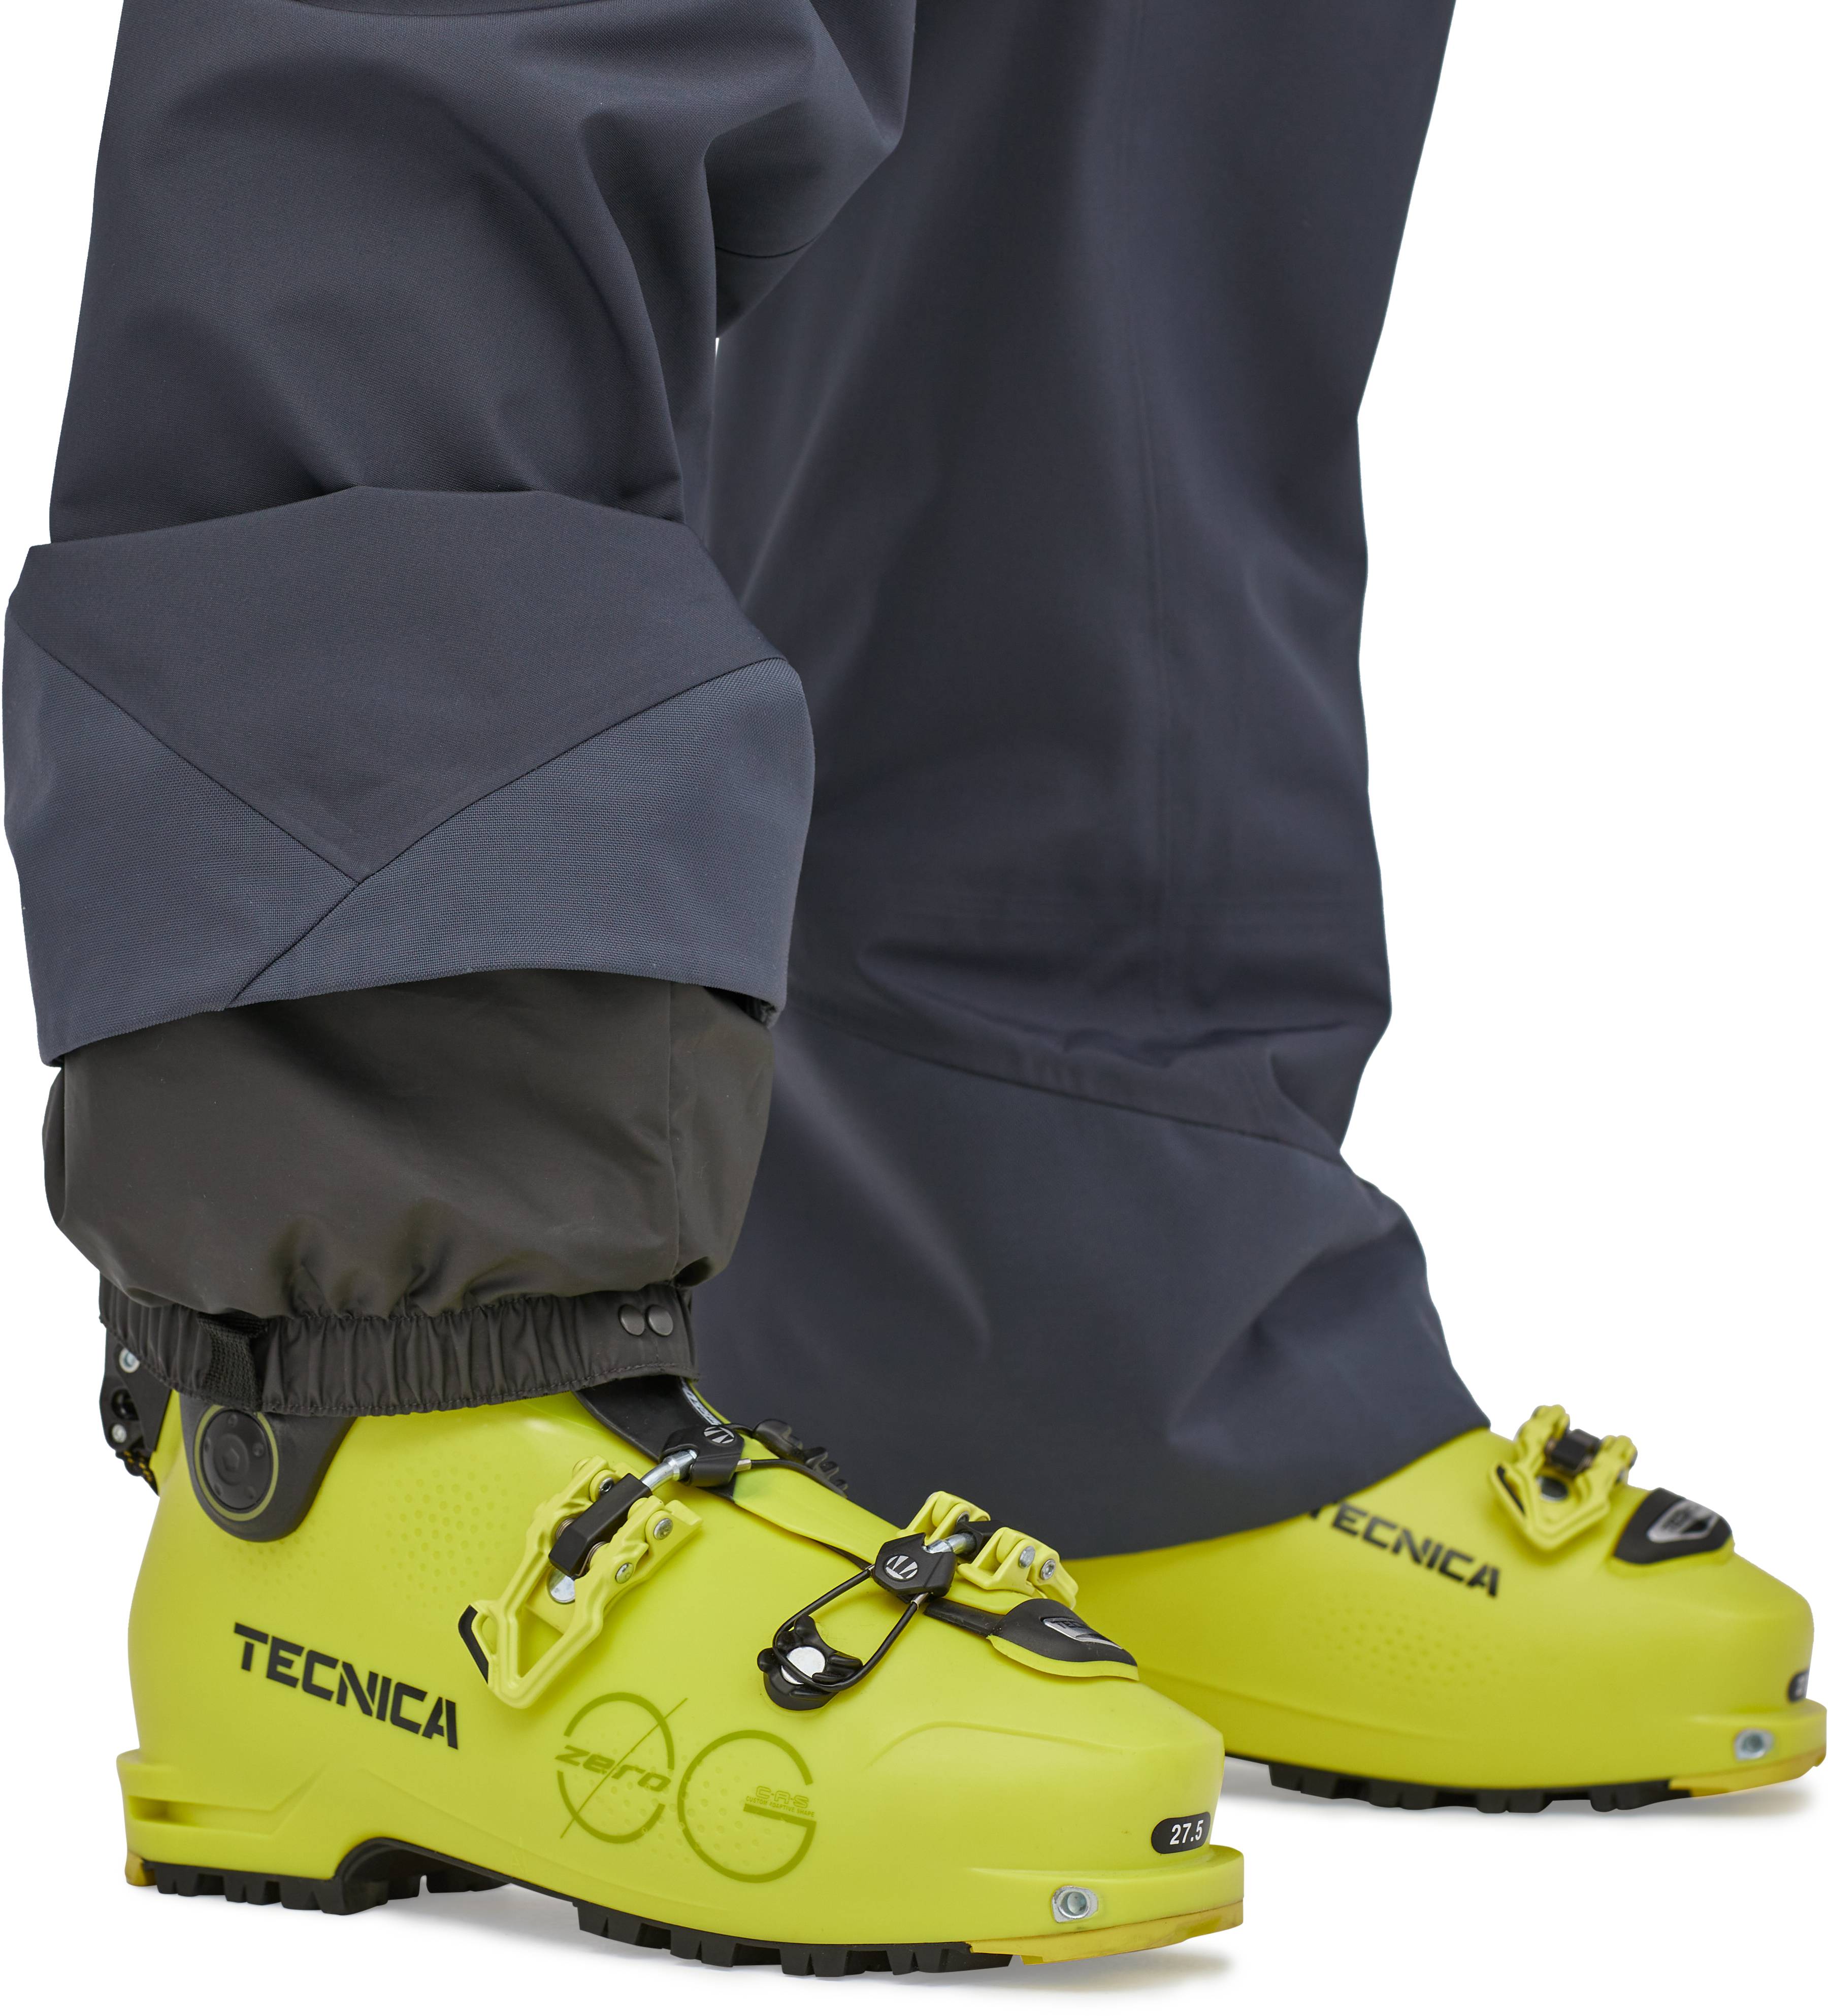 Patagonia SnowDrifter Ski/Snowboard Bib Pants